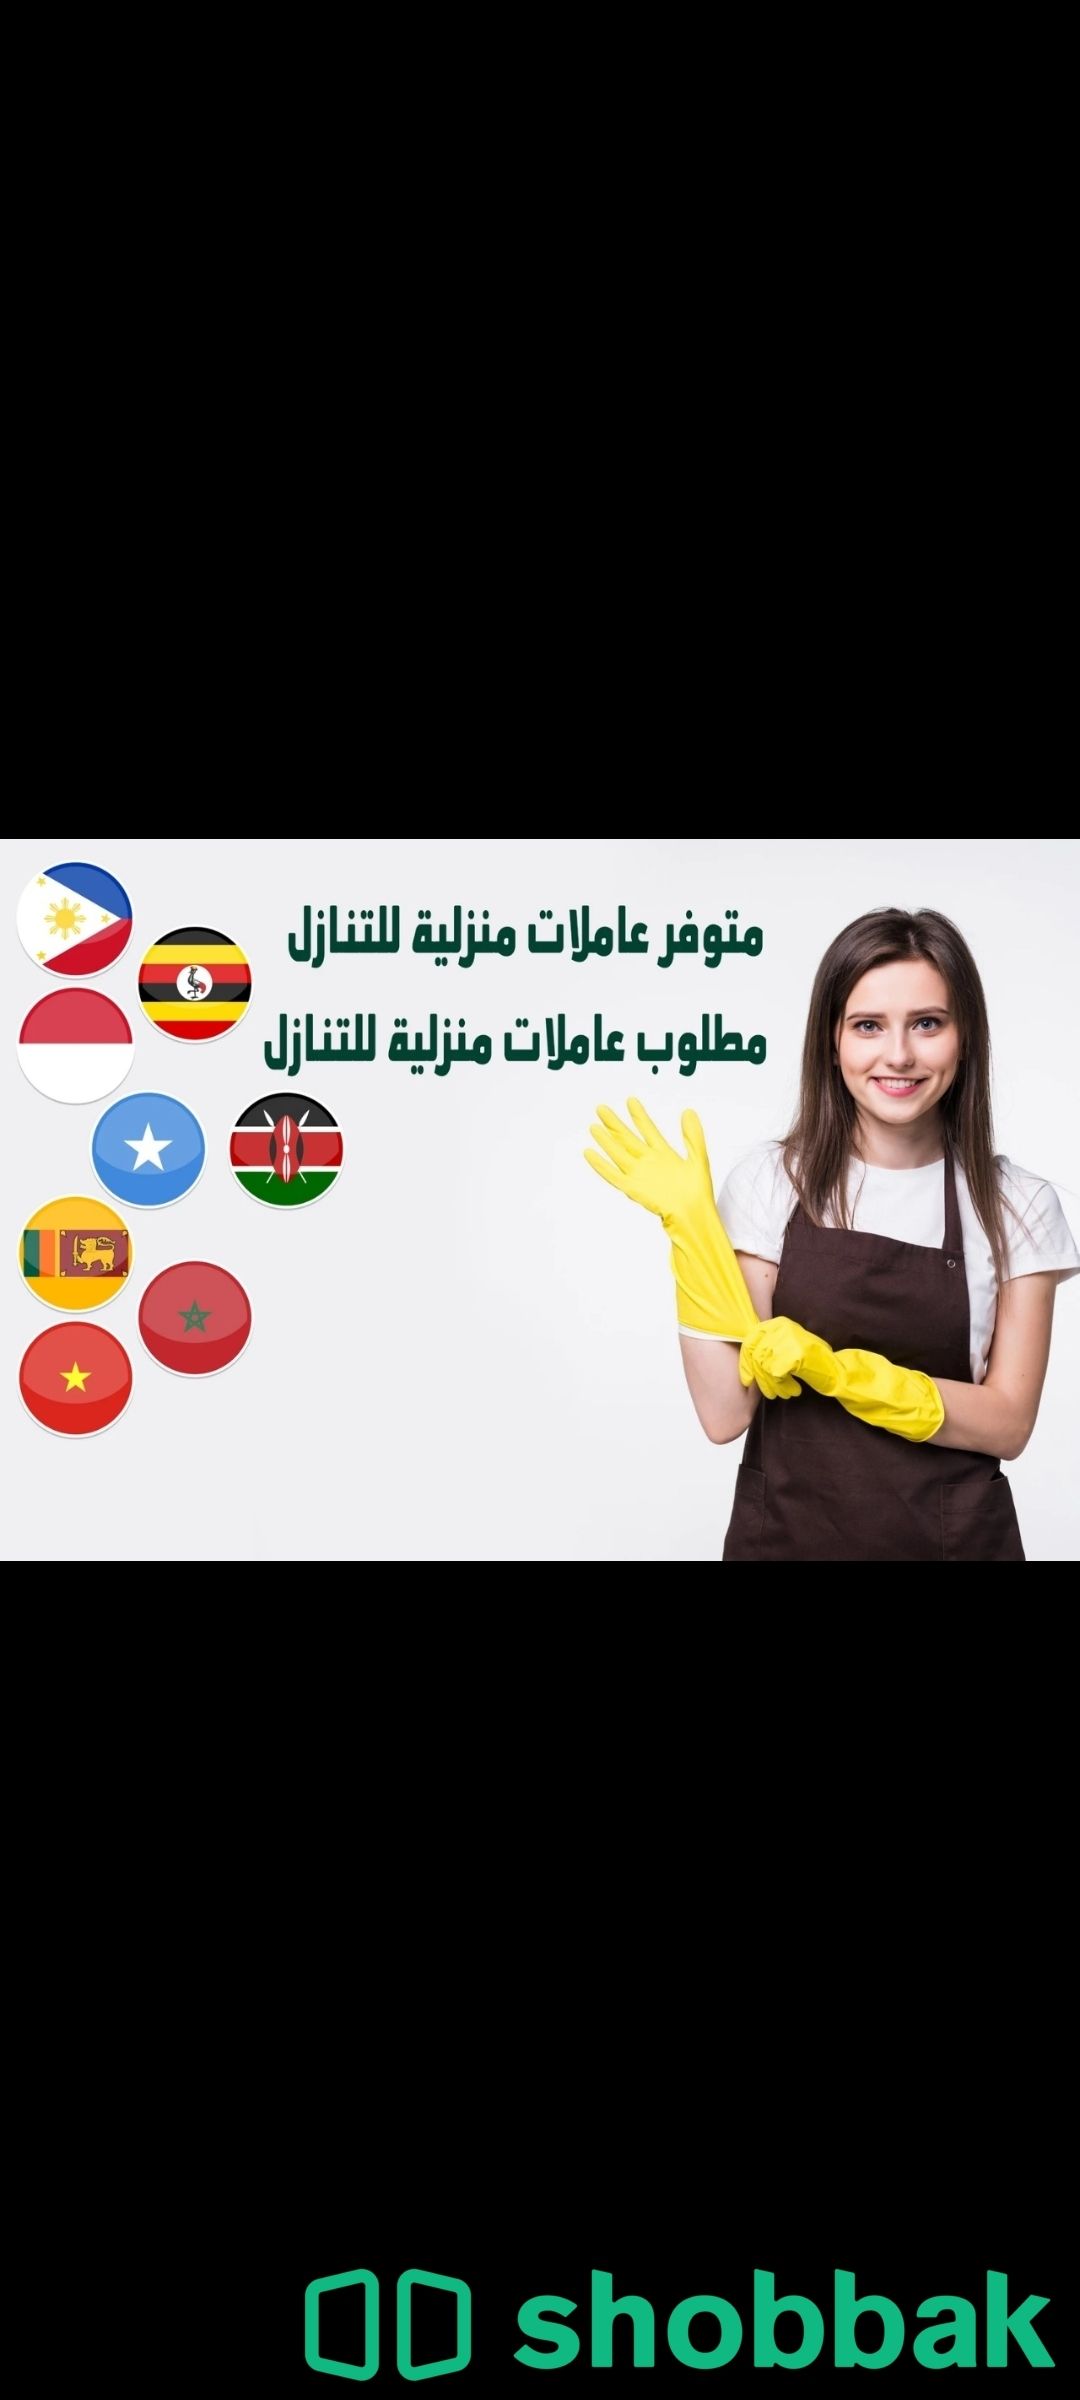 يوجد ومطلوب عاملات وطباخات للتنازل من جميع الجنسيات بافضل الاسعار 0536747079 Shobbak Saudi Arabia